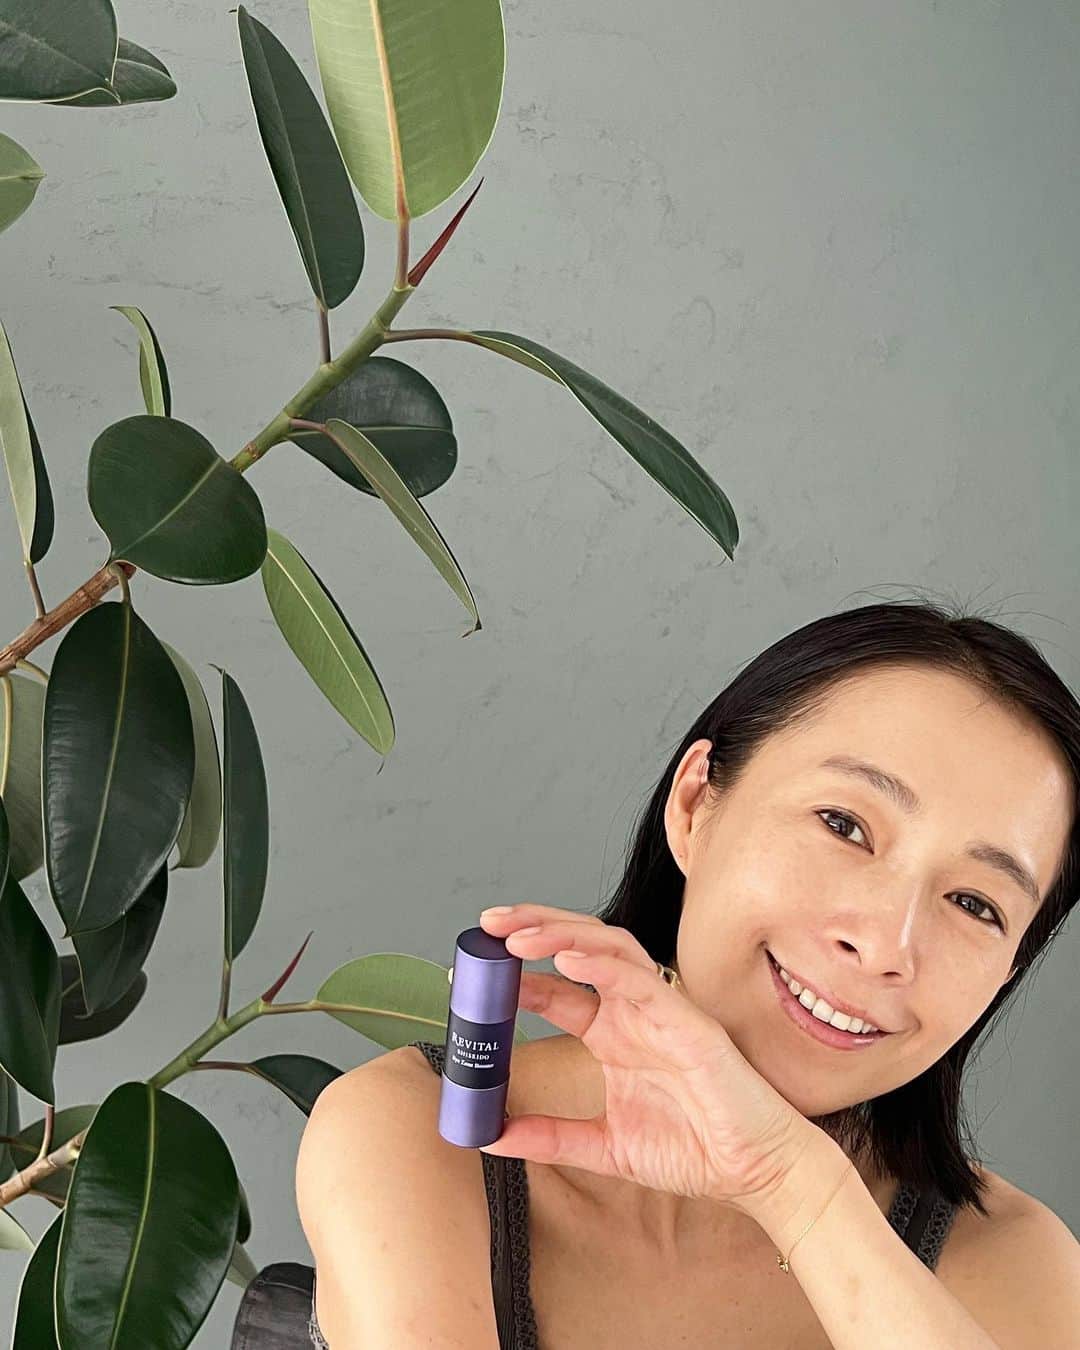 AYUMIのインスタグラム：「リバイタルが「鏡の前の美容皮膚科学」 のコンセプトのもと新生リバイタルになり第一弾として アイゾーンブースターが10月21日に発売です✨  REVITAL  リバイタル アイゾーンブースター @revital_jp  　  化粧水の前に仕込む目元美容液で、注目したいのが ヒアルロン酸研究の先駆者、資生堂が開発した 「コンパクトヒアルロン酸」  分子の大きいヒアルロン酸を約３分の１に折りたたんだ コンパクトヒアルロン酸配合により角質深層まで届きます  先進美容皮膚科学の「角質奥深くに届ける技術」に着目された高機能スキンケア、リバイタル アイゾーンブースターを目周りに仕込んでから化粧水など、いつものスキンケアをすることによりヒアルロン酸が潤いを抱え込んでアイゾーンがふっくら目映え✨  使うタイミングは、夜の洗顔のあと一番最初にブースターとして使います。みずみずしいとろみで伸びが良く目元にスッーっと浸透してサラリとした使い心地♪  目元の皮膚は薄く乾燥しやすいのでケアを しっかりしていきたいです😊  REVITAL  リバイタル アイゾーンブースター 15mL  11,000円（税込）  ※今なら3日間分のサンプリングキャンペーン中です♪  #PR  #REVITAL  #リバイタル #SHISEIDO  #資生堂 #鏡の前の美容皮膚科学 #アイゾーンブースター #アイゾーンが目映える #おすすめスキンケア #アイケア」